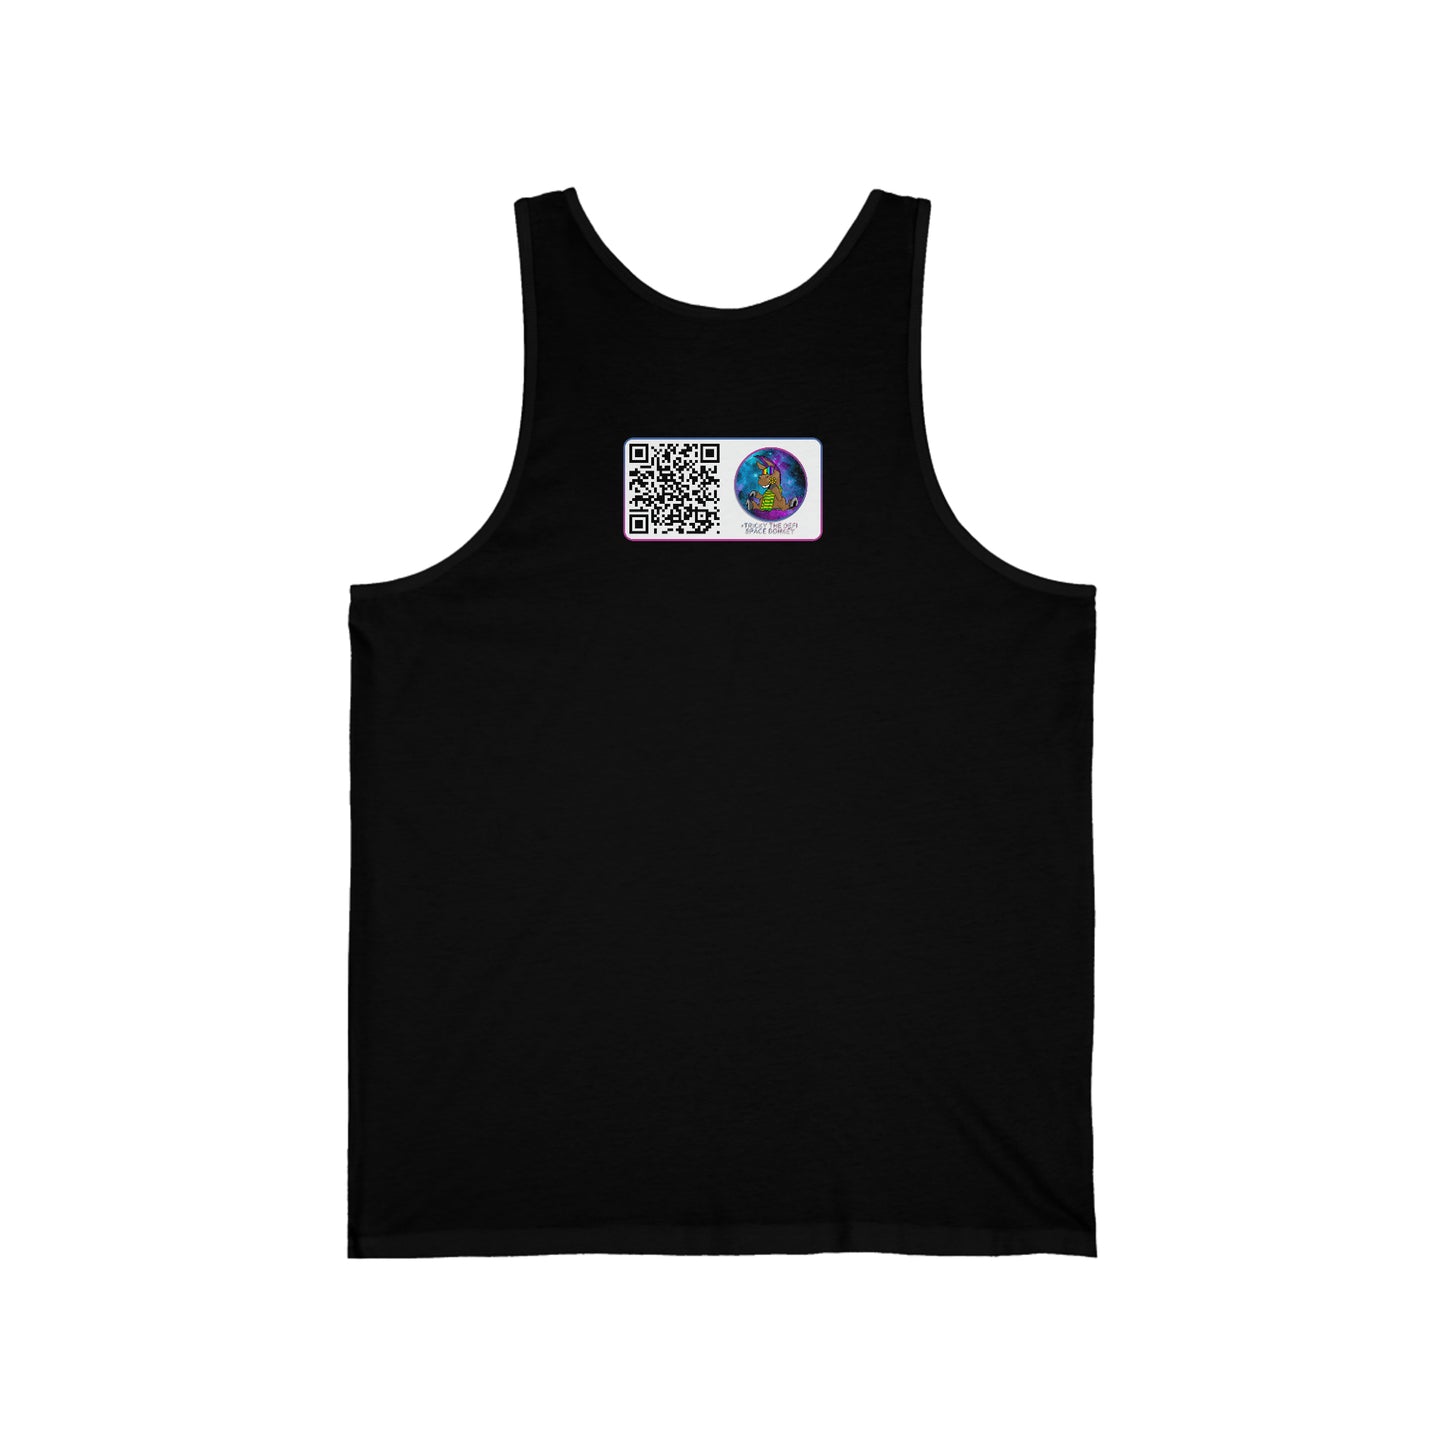 Burros espaciales DeFi #23 Camiseta sin mangas unisex